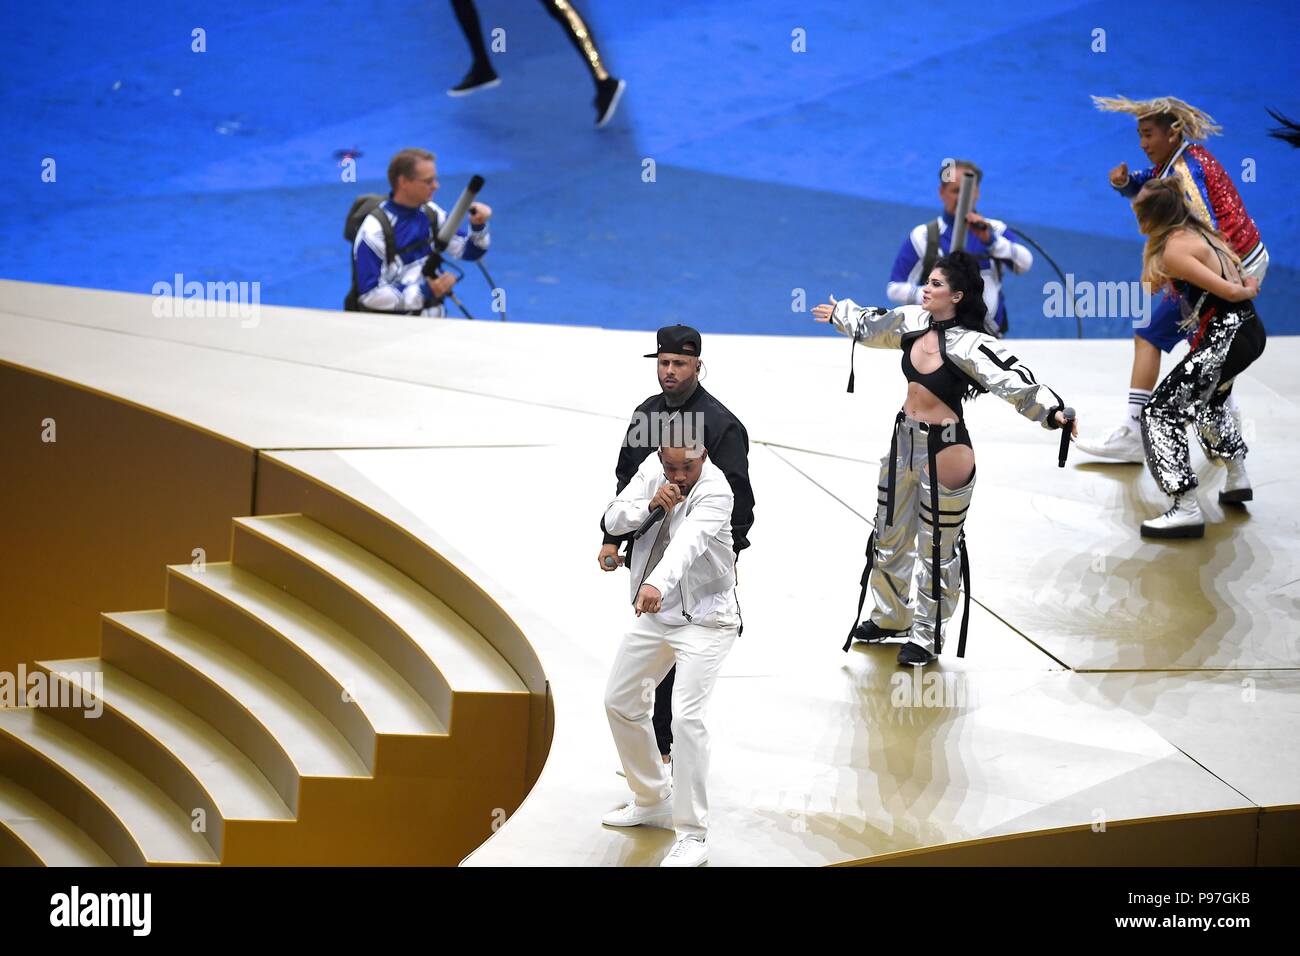 Moscou, Russie. 15 juillet 2018, l'époque Istrefi , Will Smith et Nicky Jam effectuer au cours de la cérémonie de clôture avant la Coupe du Monde 2018 match final entre la France et la Croatie au stade Luzhniki de Moscou. Shoja Lak/Alamy Live News. Banque D'Images